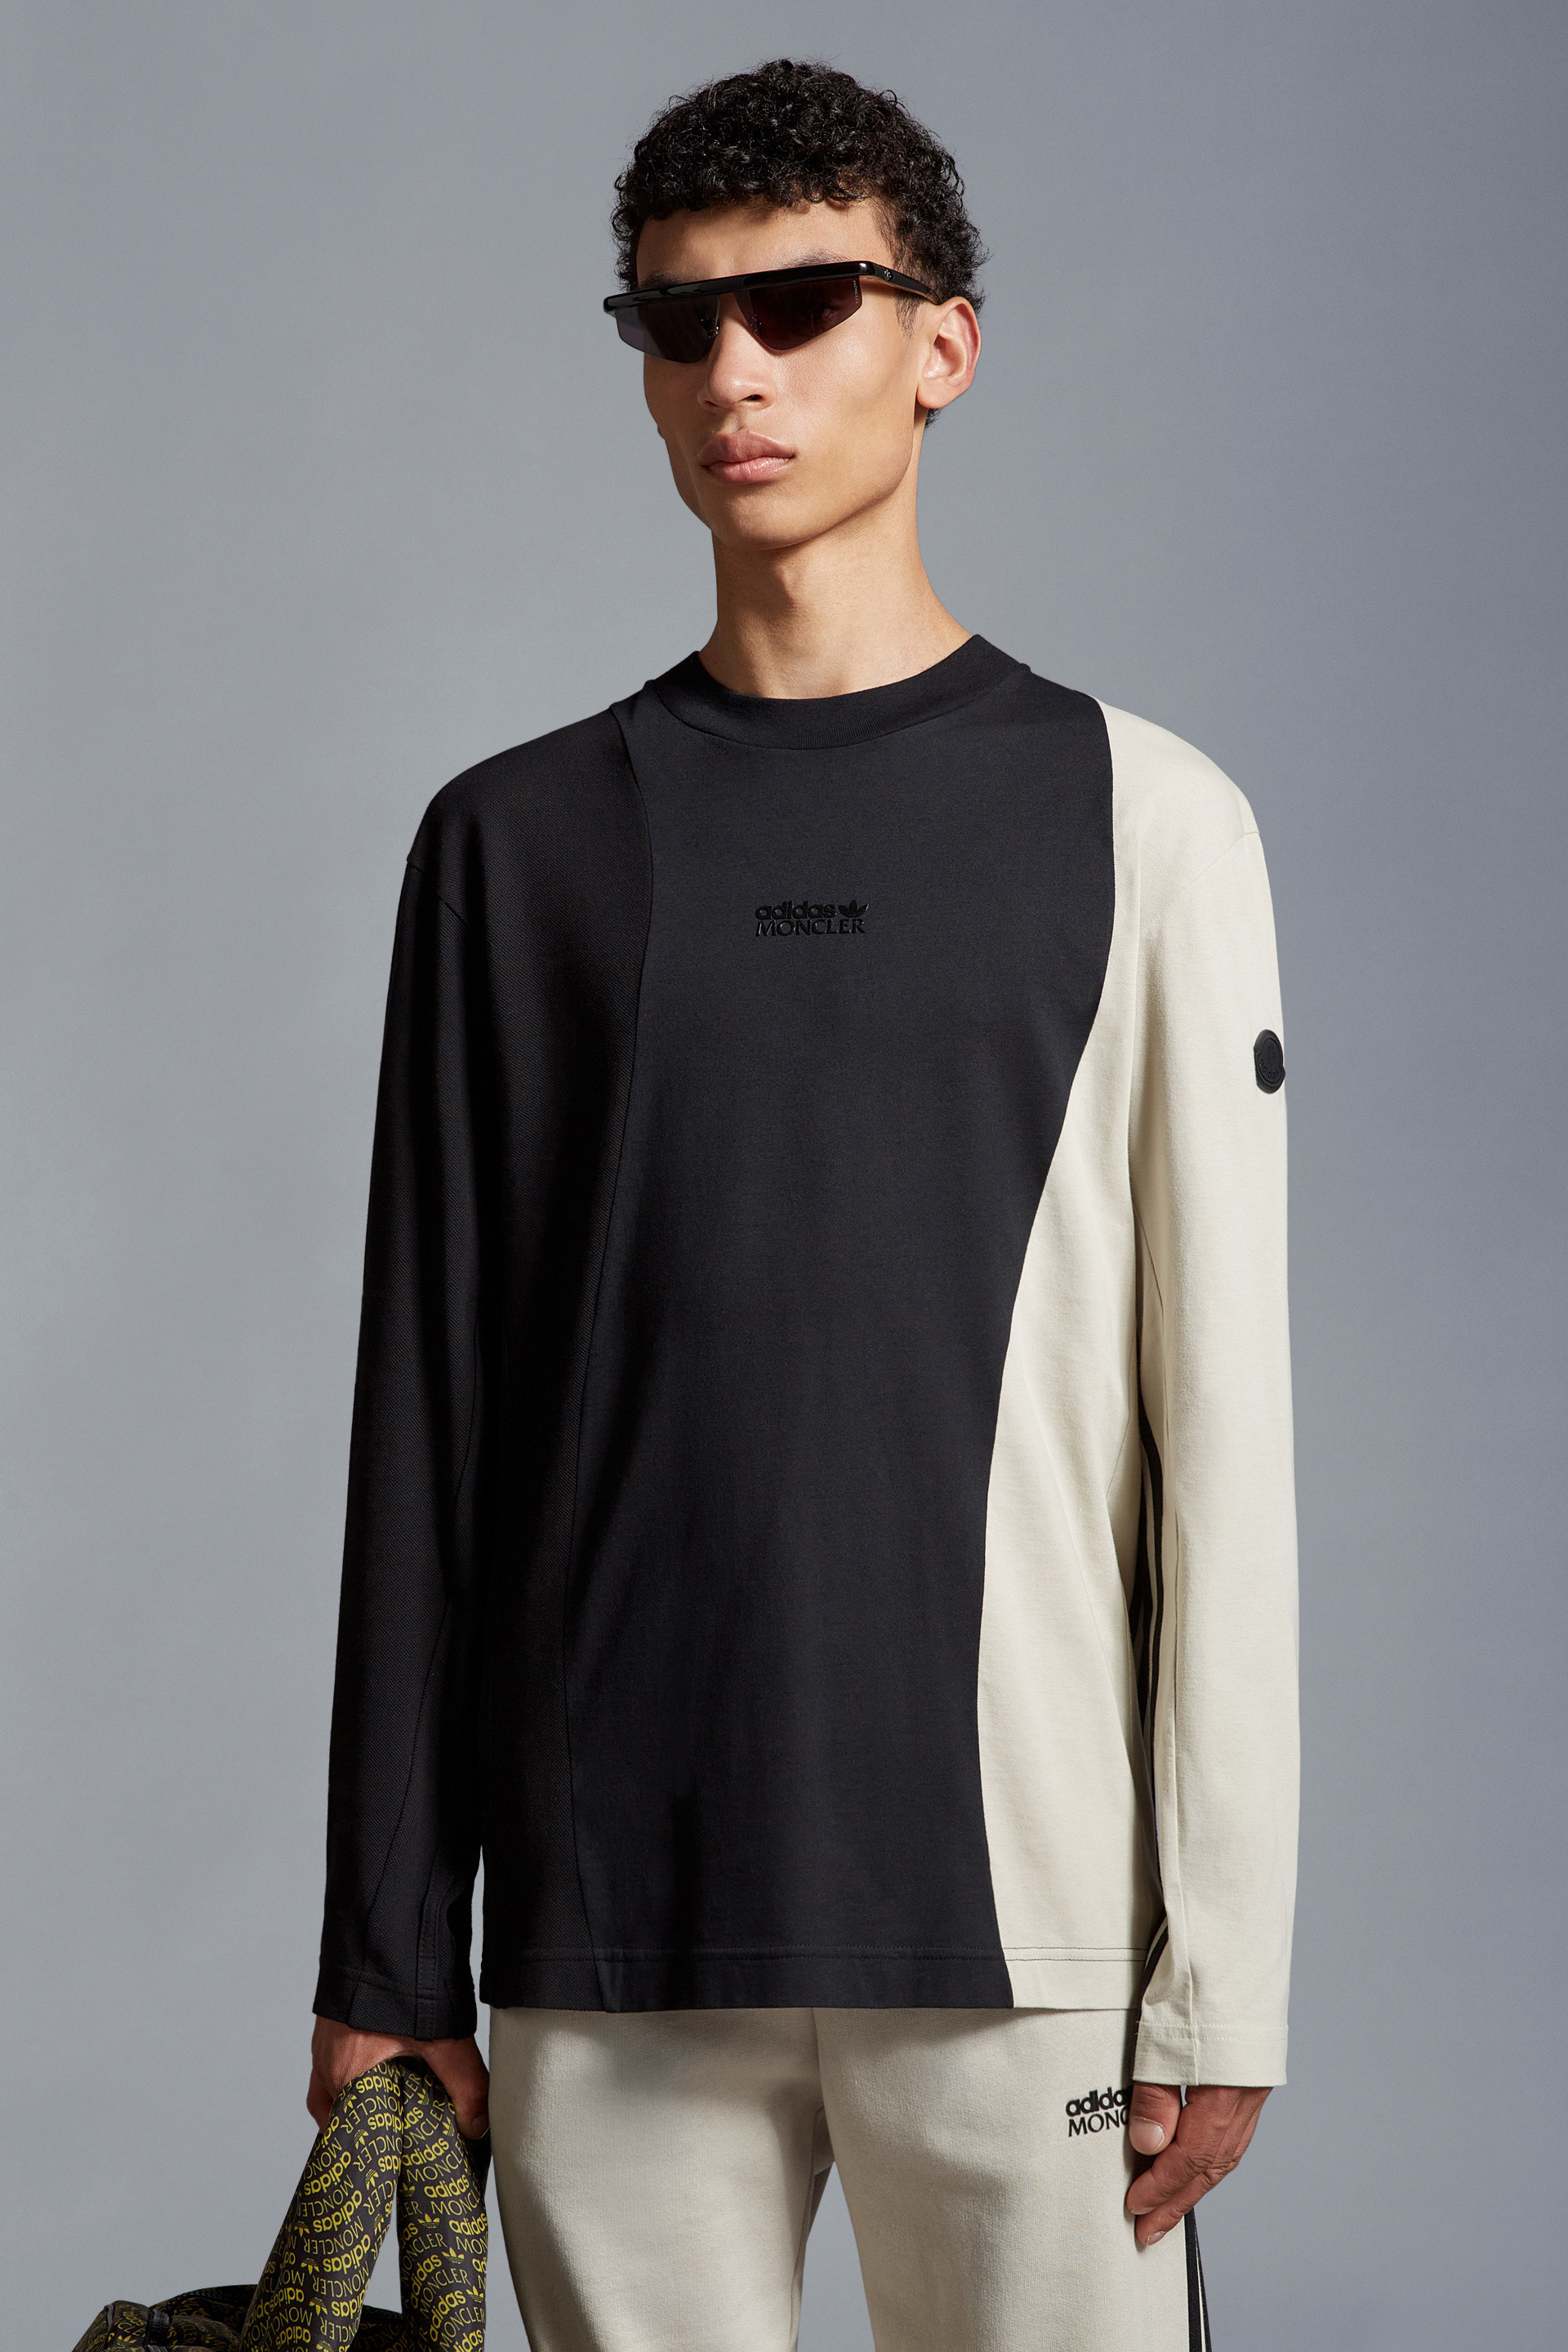 ブラック & ホワイト ロングスリーブTシャツ : Moncler x adidas 